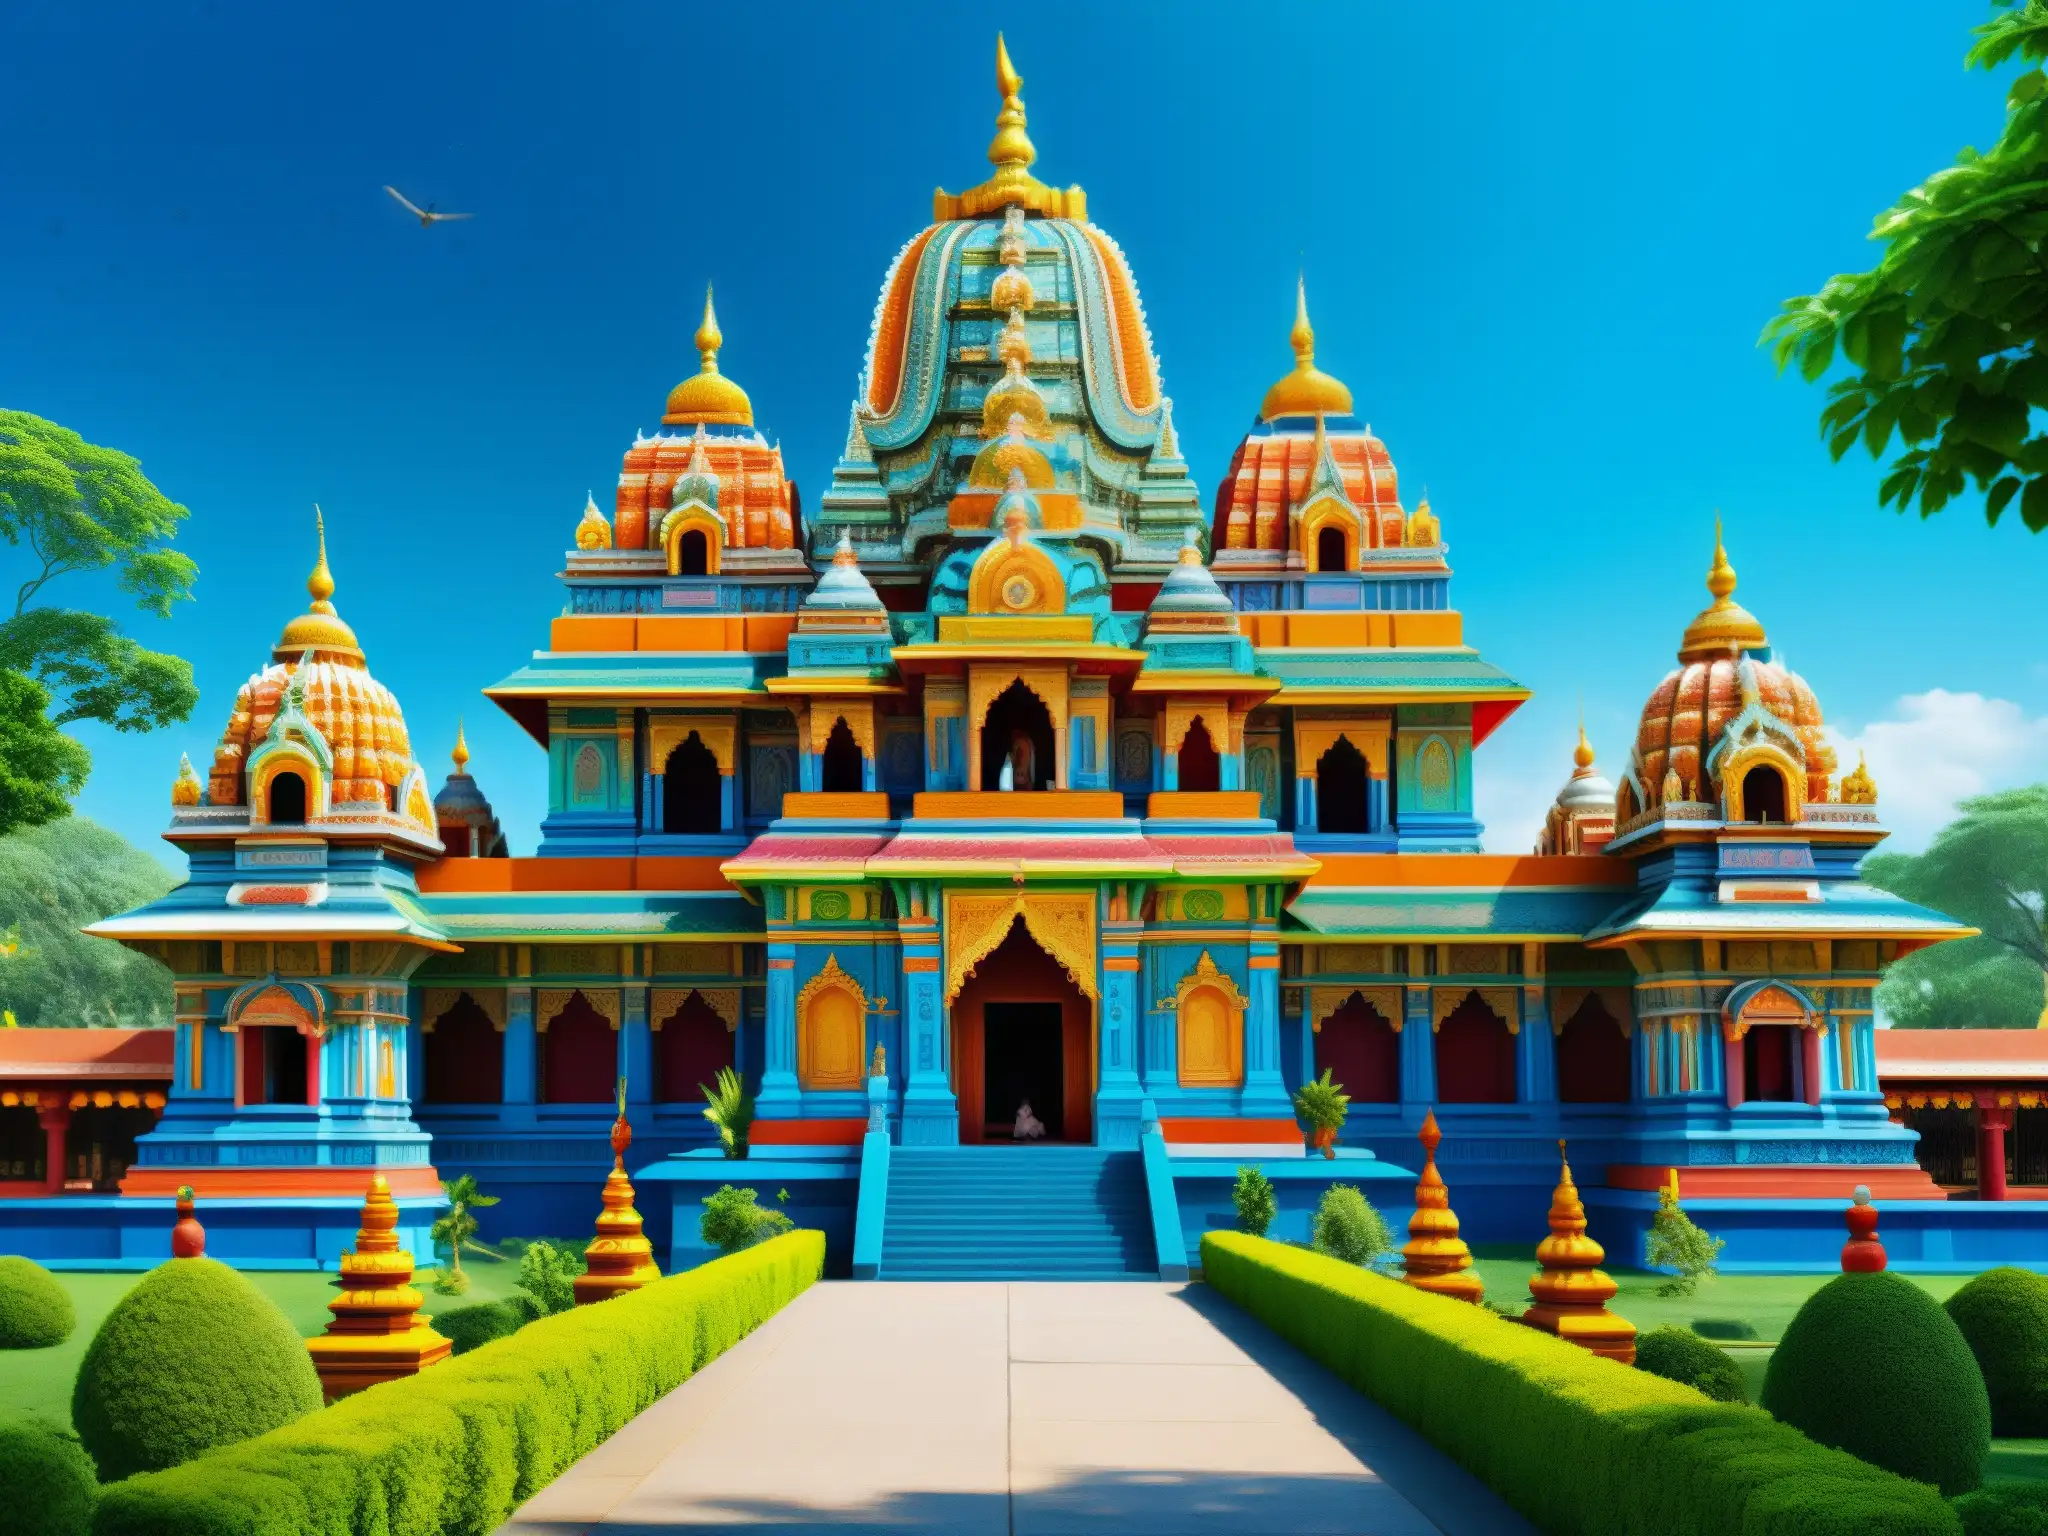 Templo hindú vibrante con estatuas coloridas, rituales tradicionales y vestimenta vibrante, reflejando la rica tradición espiritual hindú